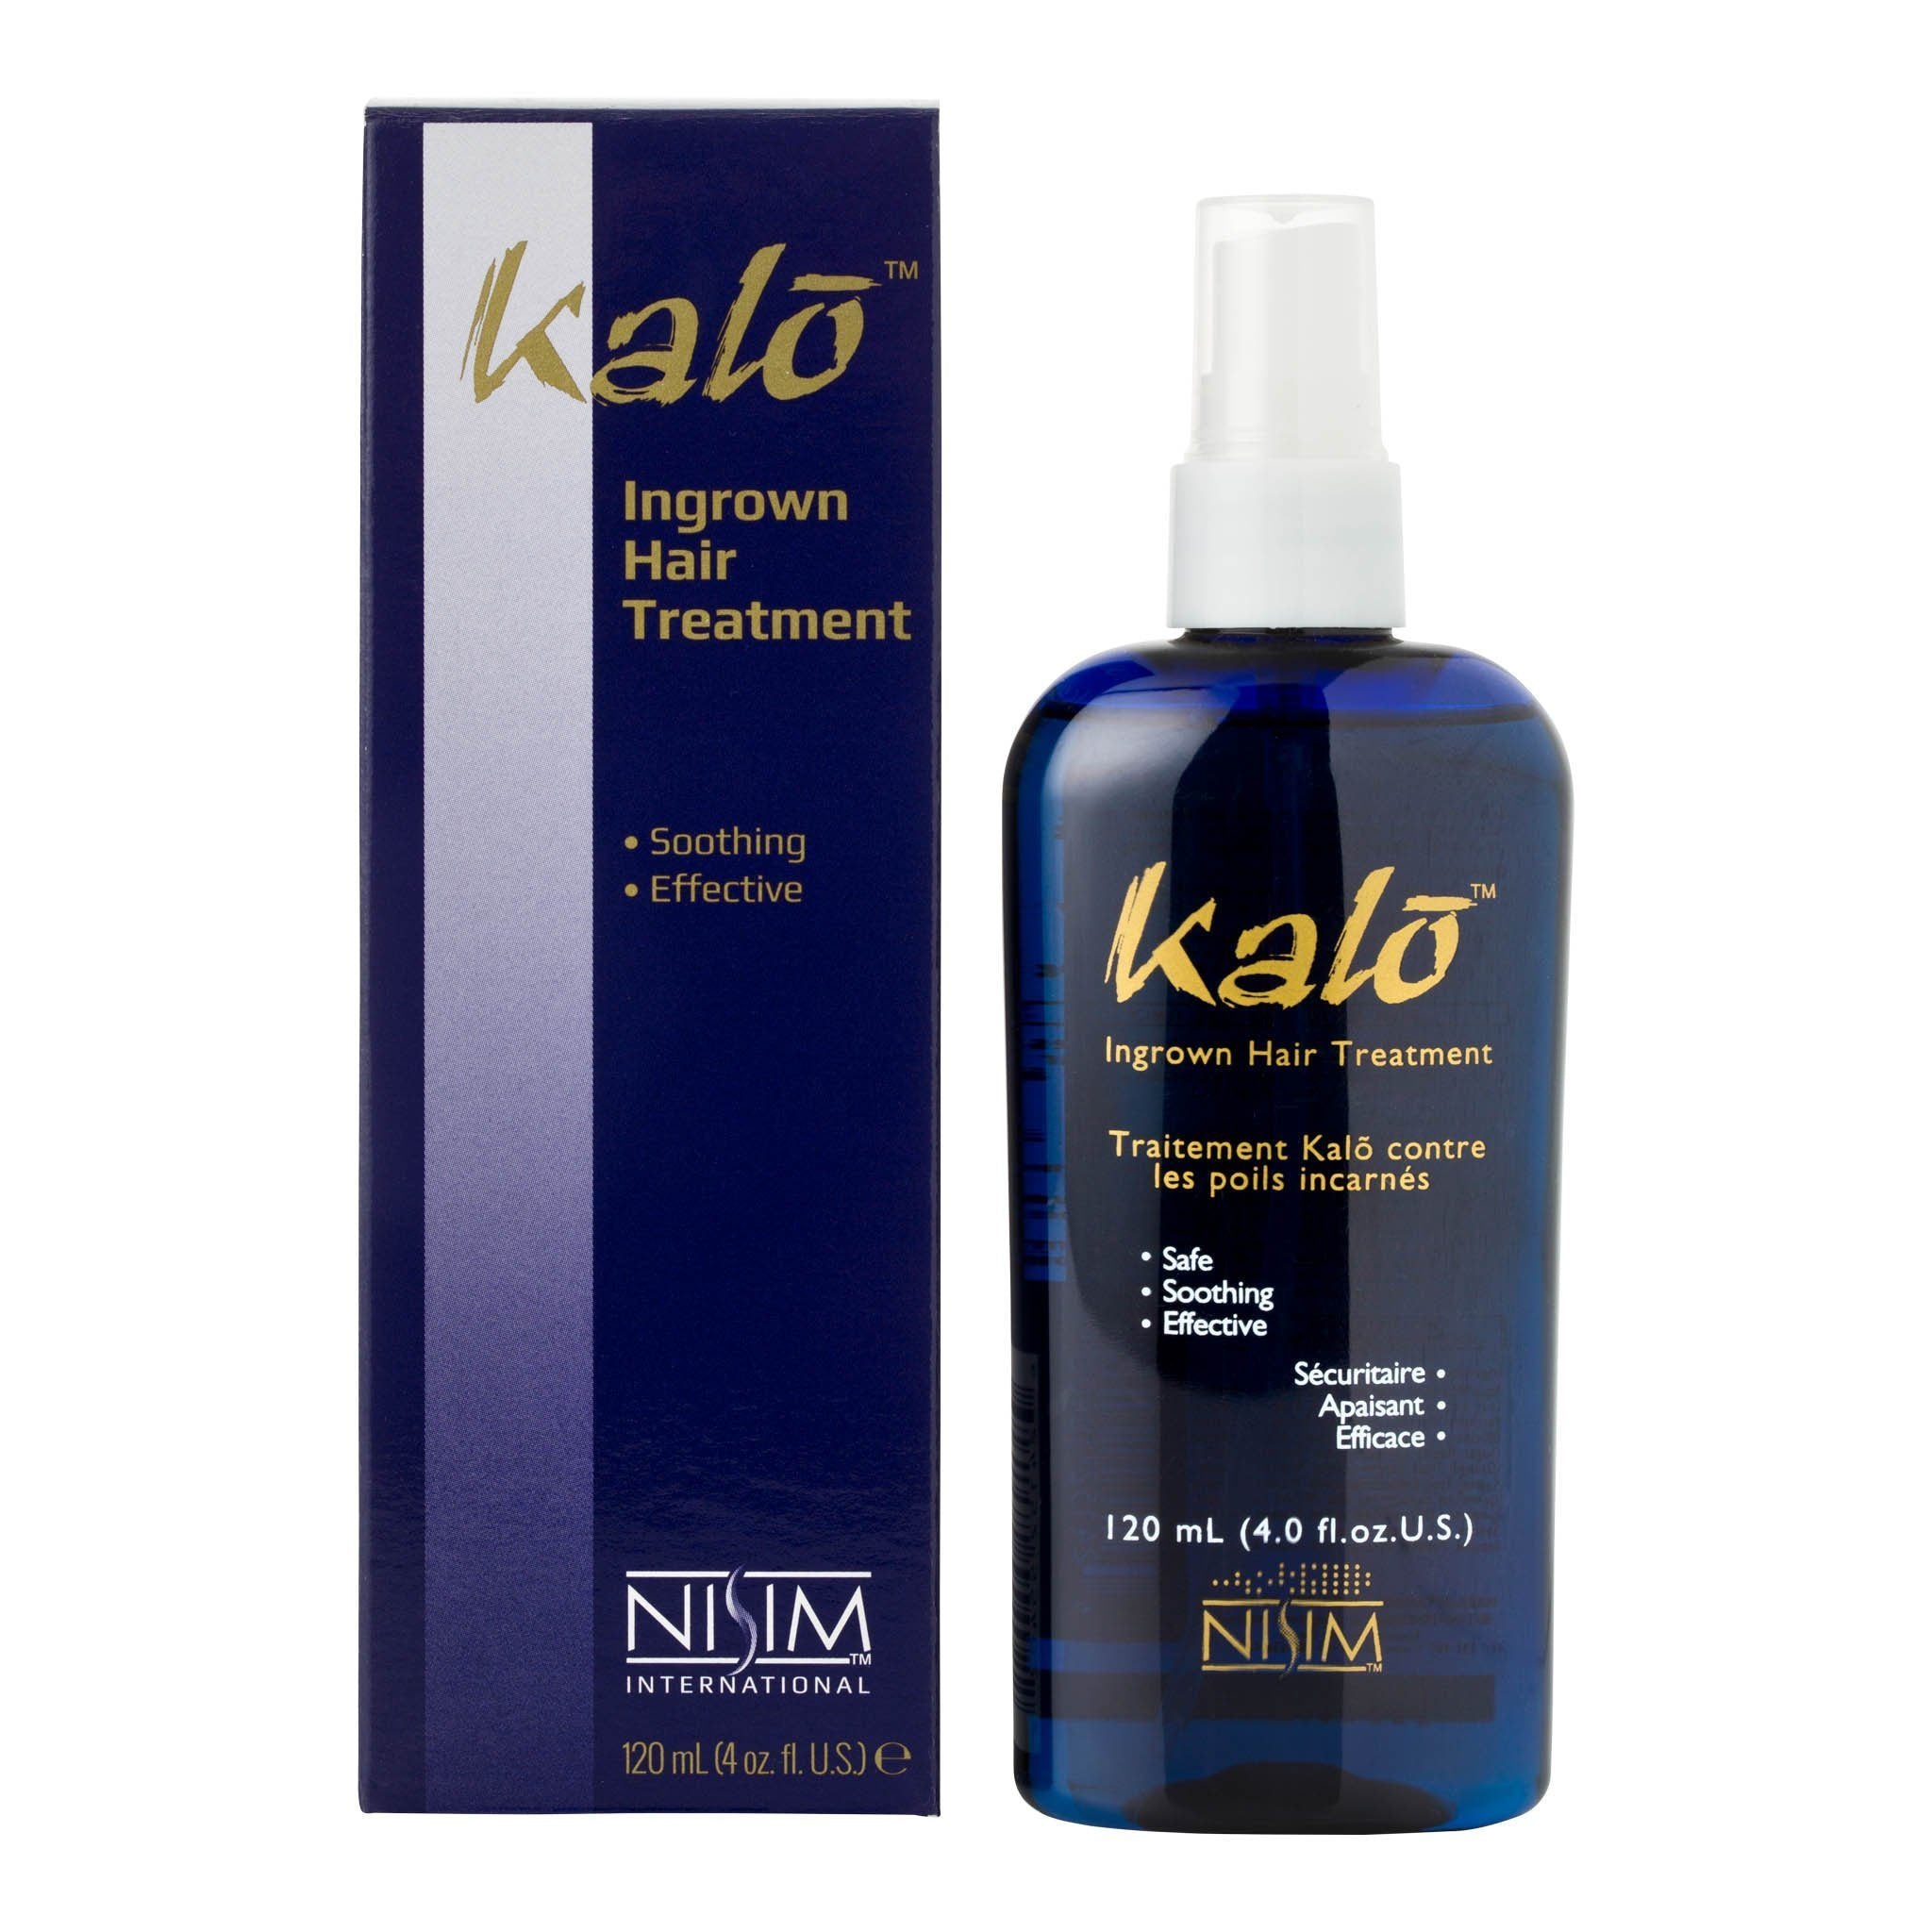 Kalo Ingrown Hair Treatment